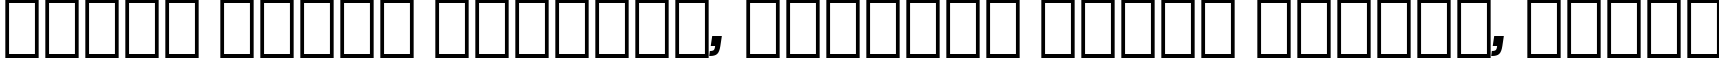 Пример написания шрифтом Compacta Bold Italic BT текста на белорусском